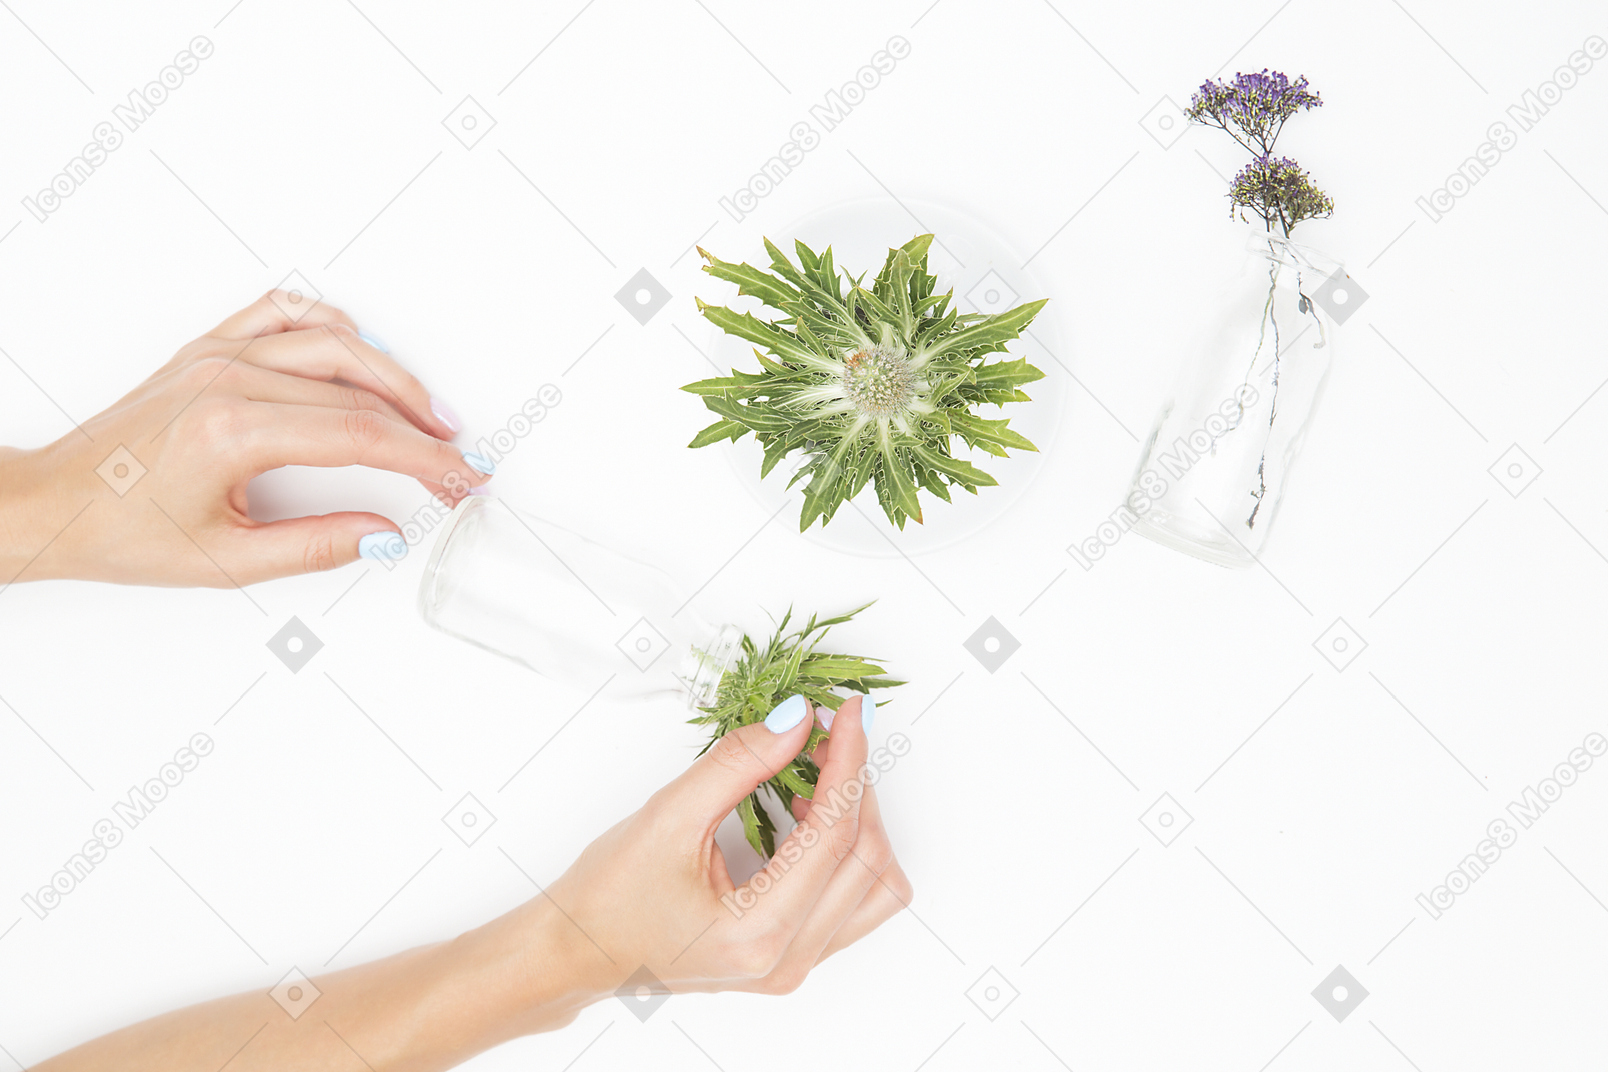 Mão feminina ao lado dos diferentes objetos de vidro e plantas verdes